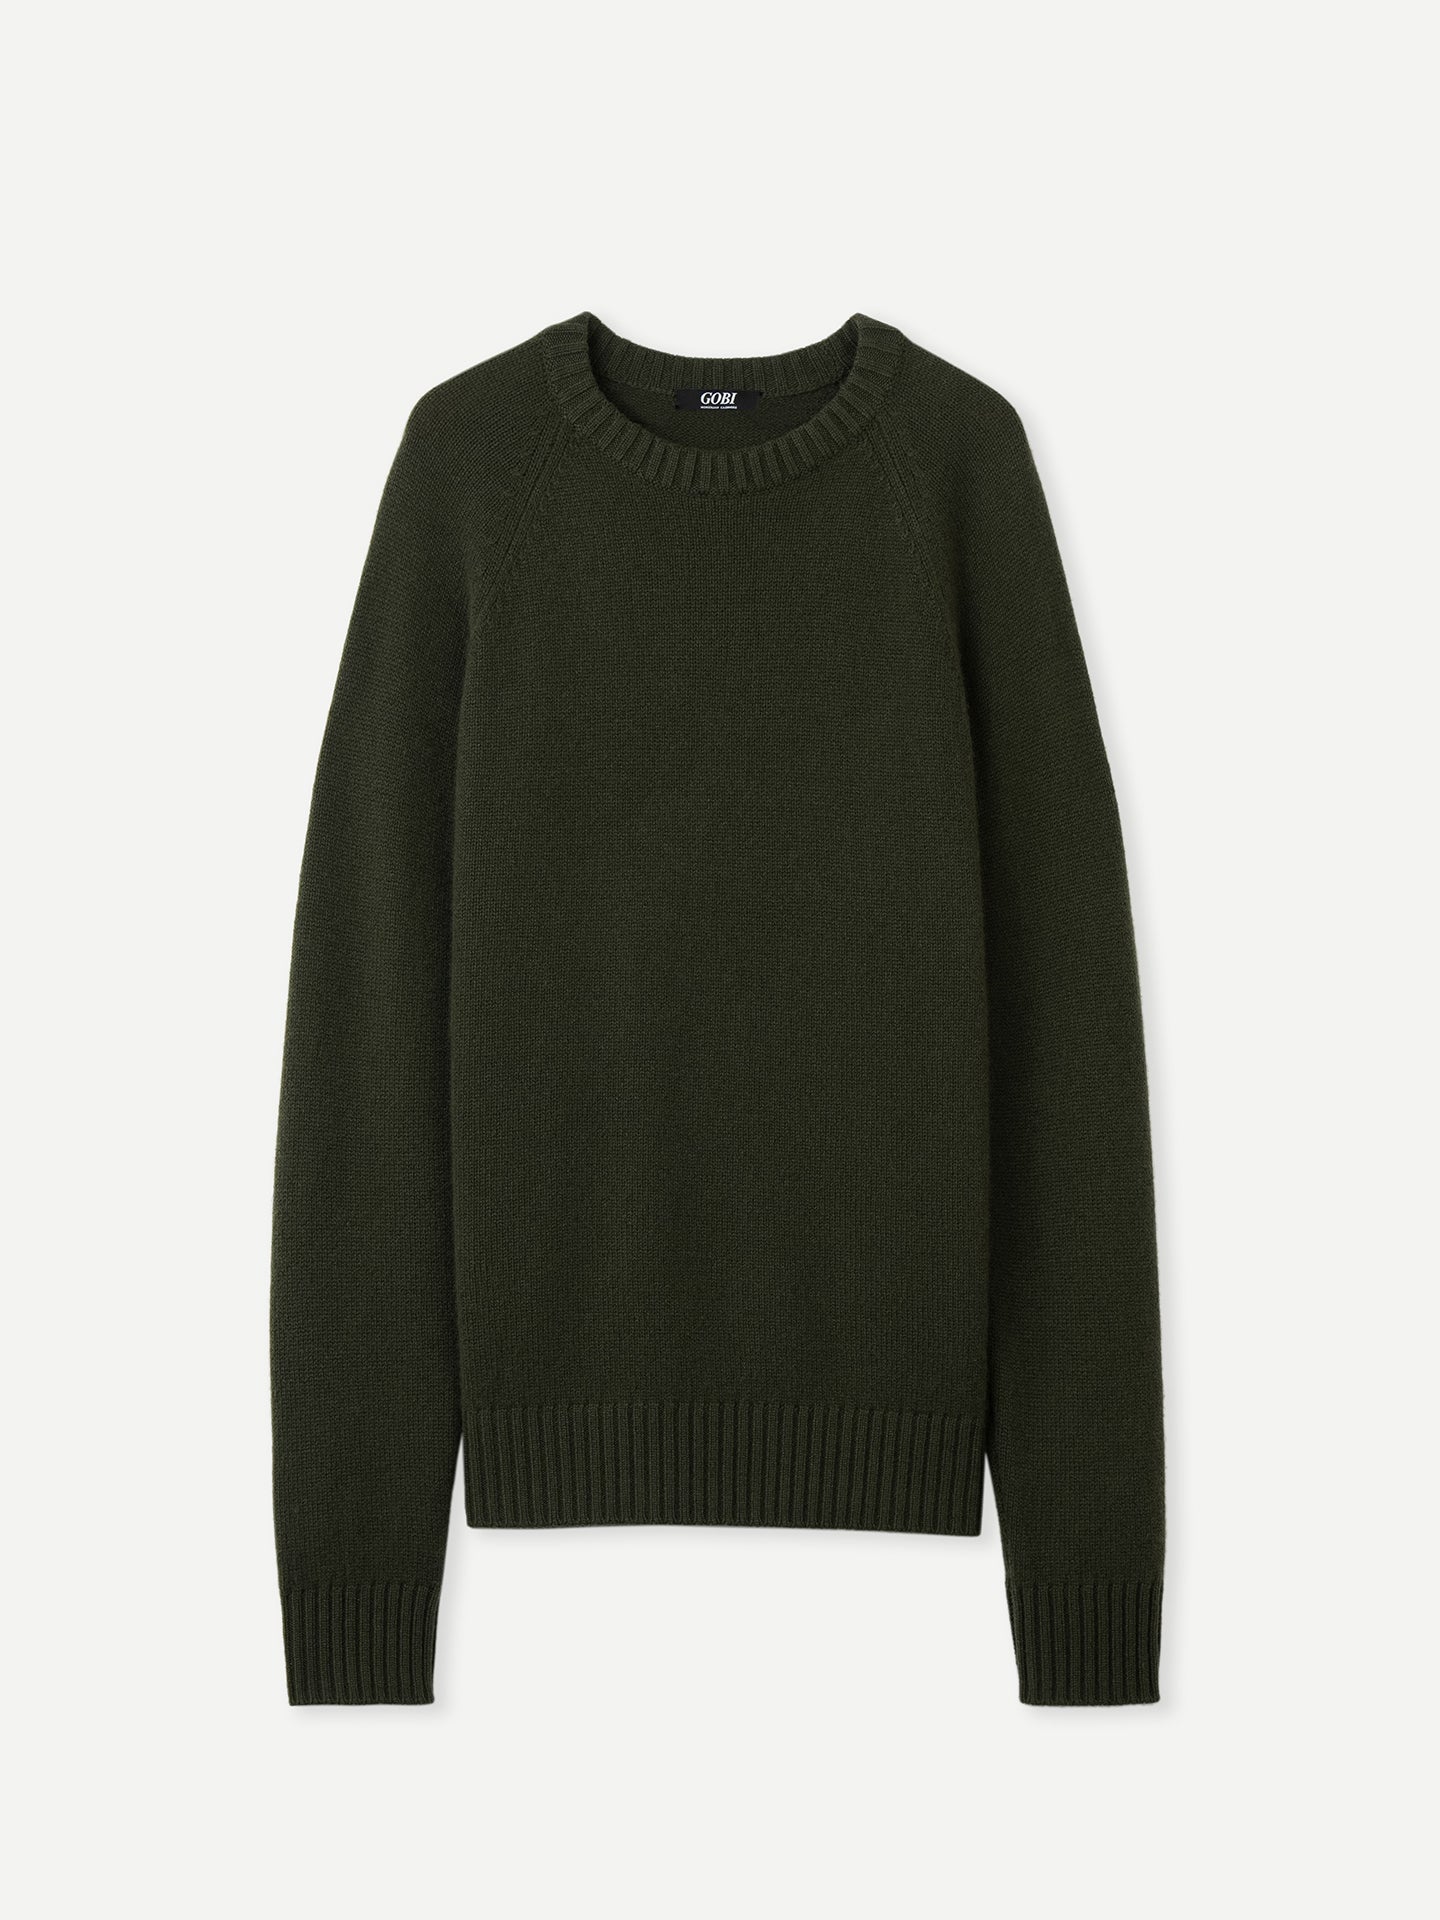 Men's Cashmere Raglan Sweater Capulet Olive - Gobi Cashmere